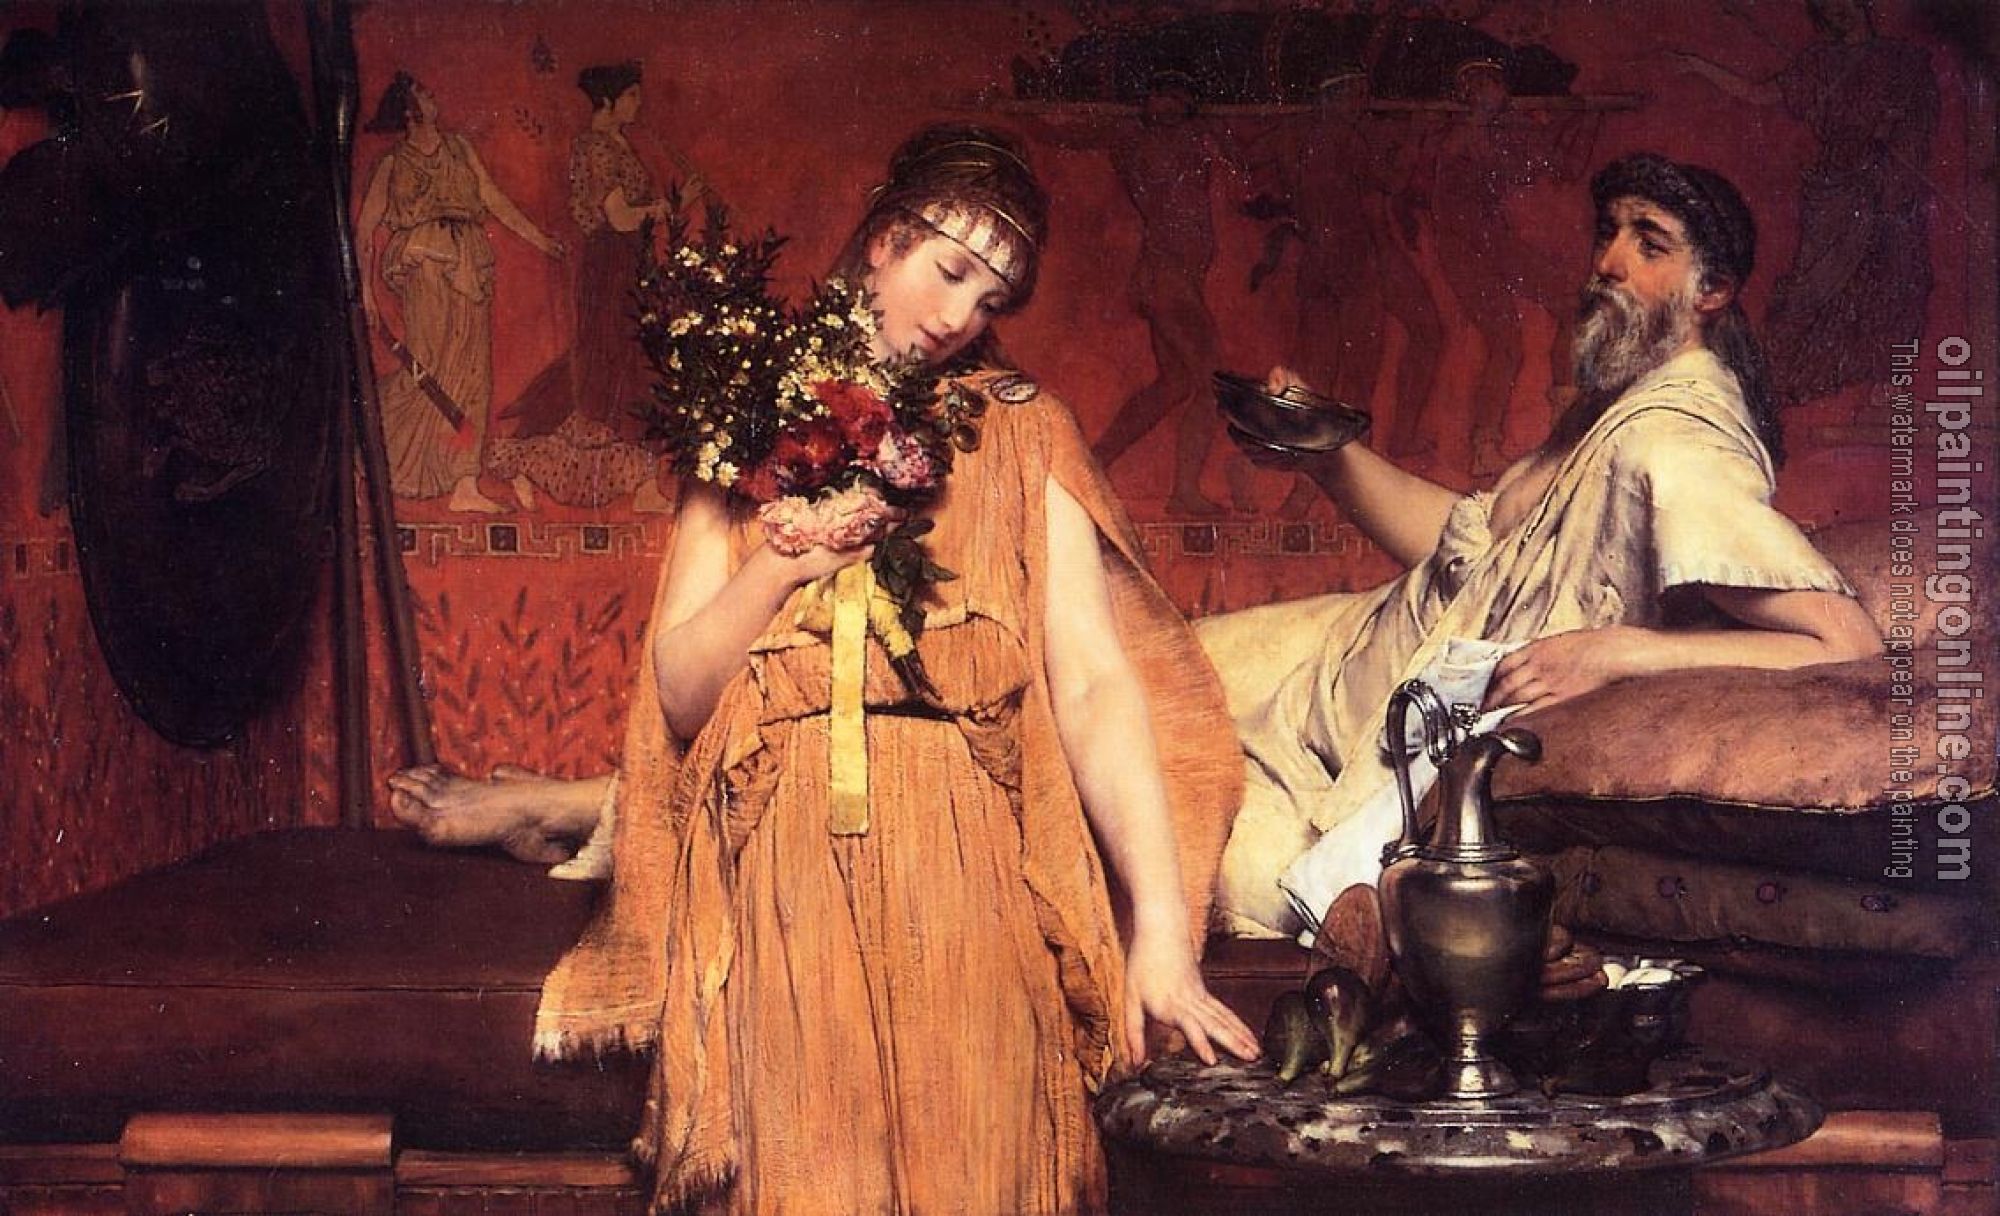 Alma-Tadema, Sir Lawrence - Between Hope and Fear